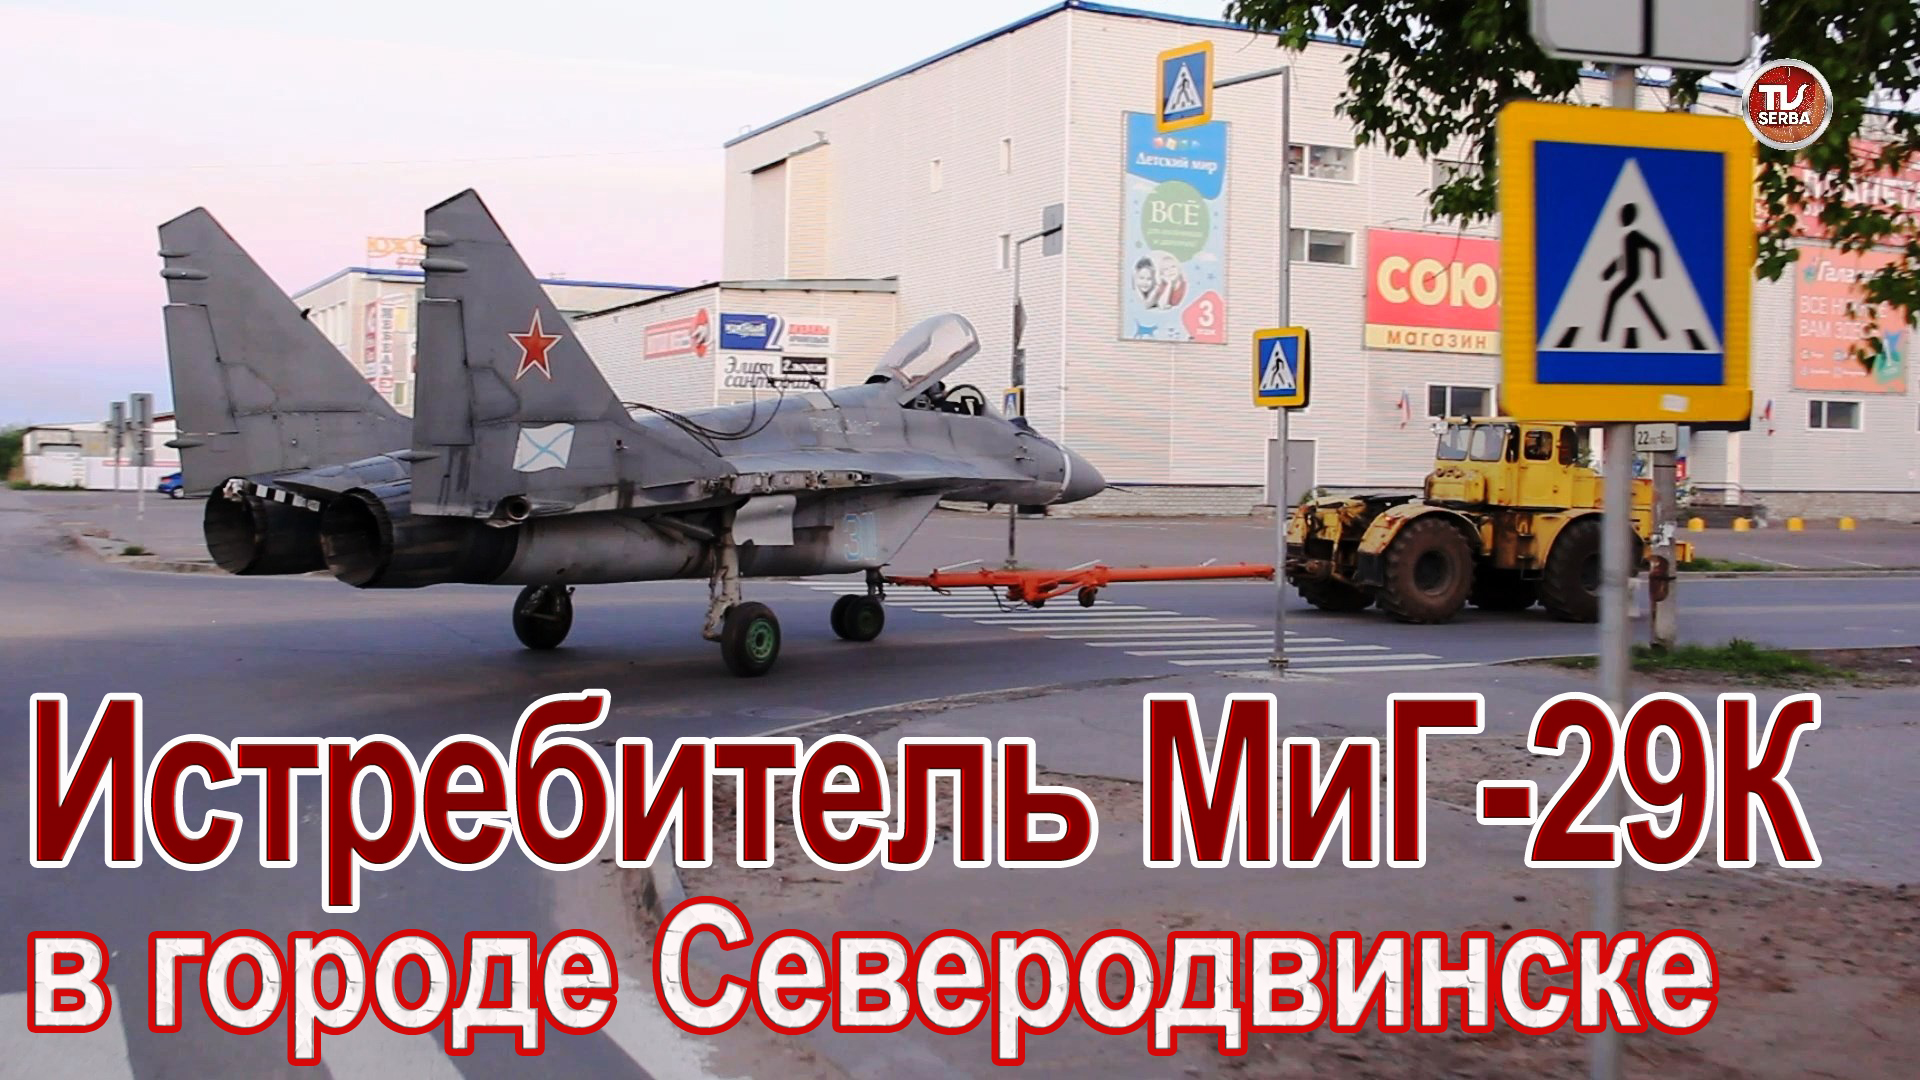 Транспортировка истребителя МиГ-29К с АО «ПО «Севмаш» по улицам города Северодвинска / СербаТВ ?